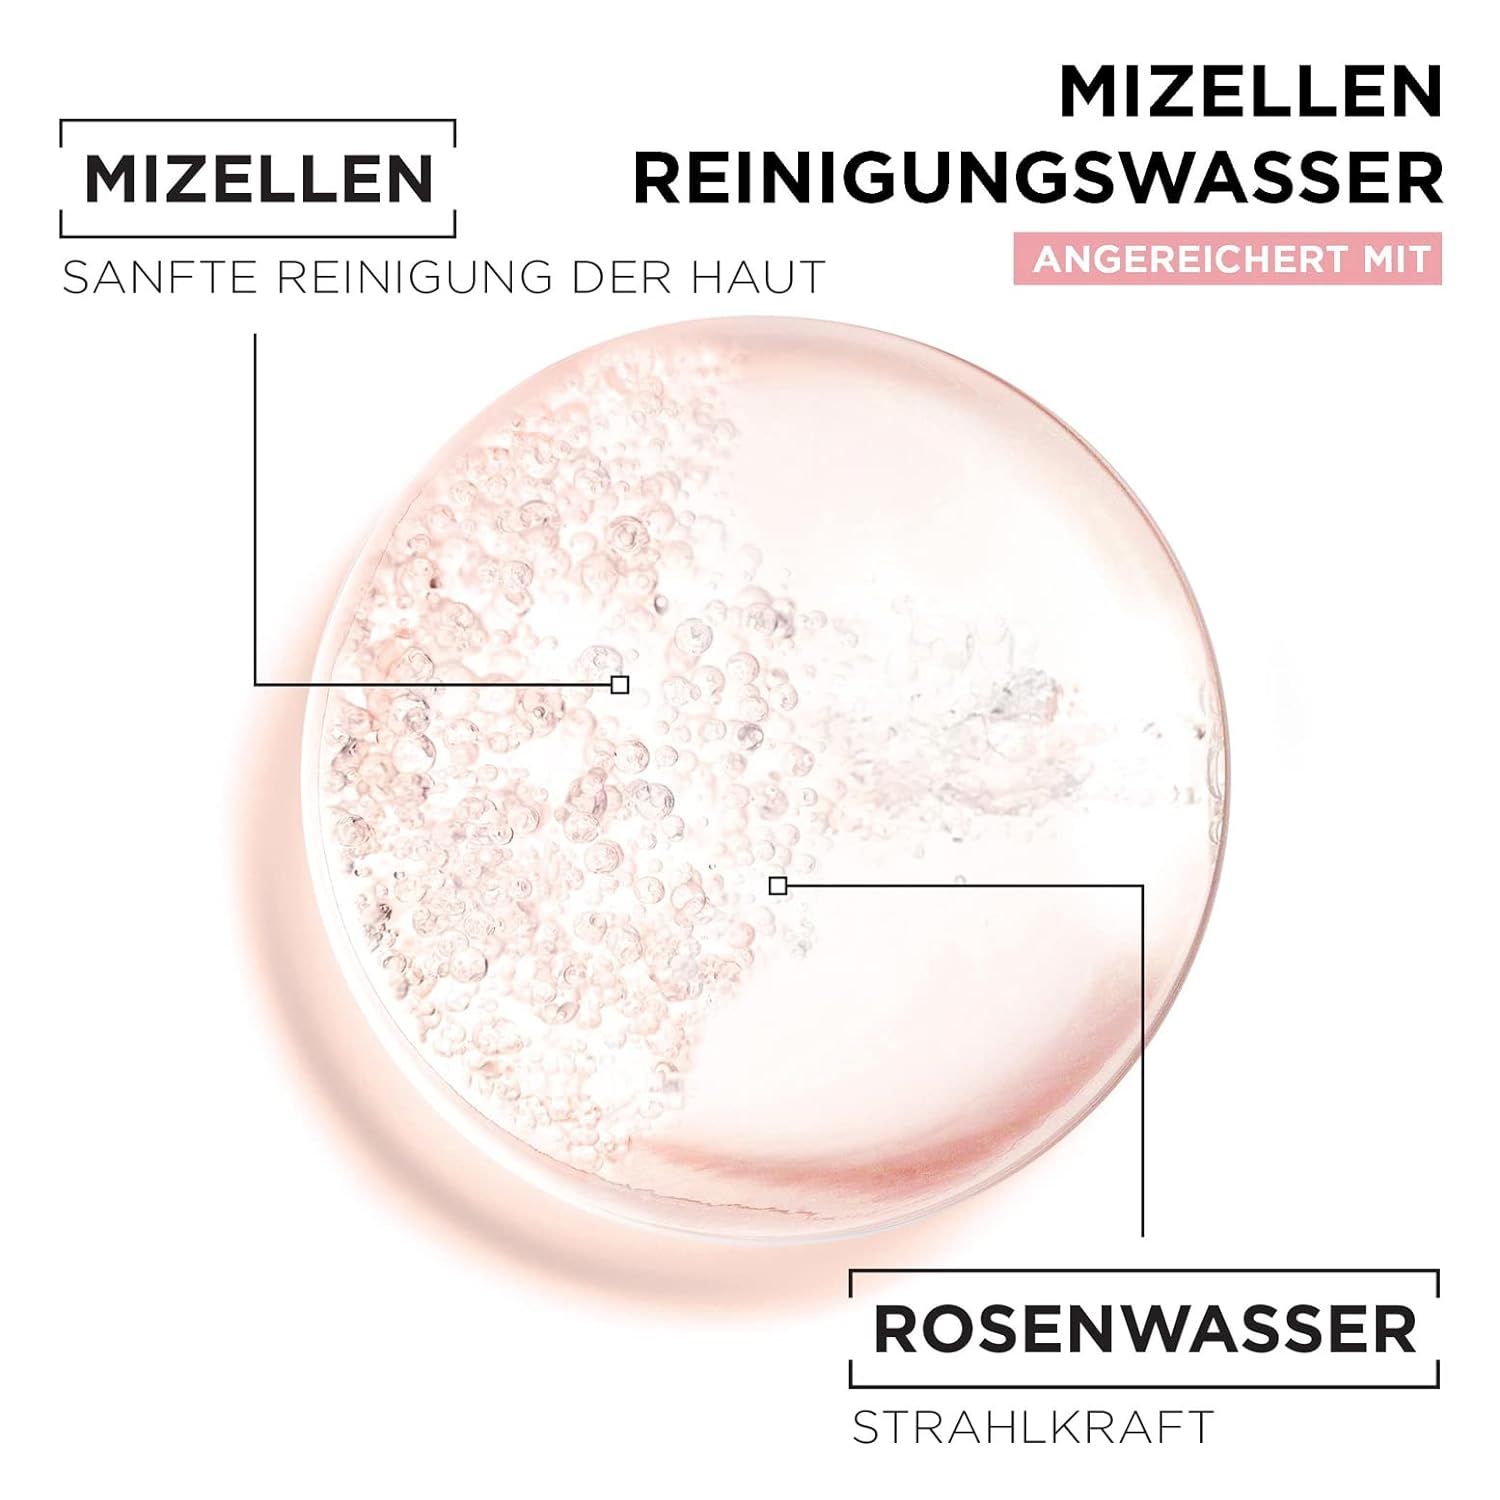 Garnier Mizellen Reinigungswasser, All-in-1 Reinigung mit ml 700 Rosenwasser